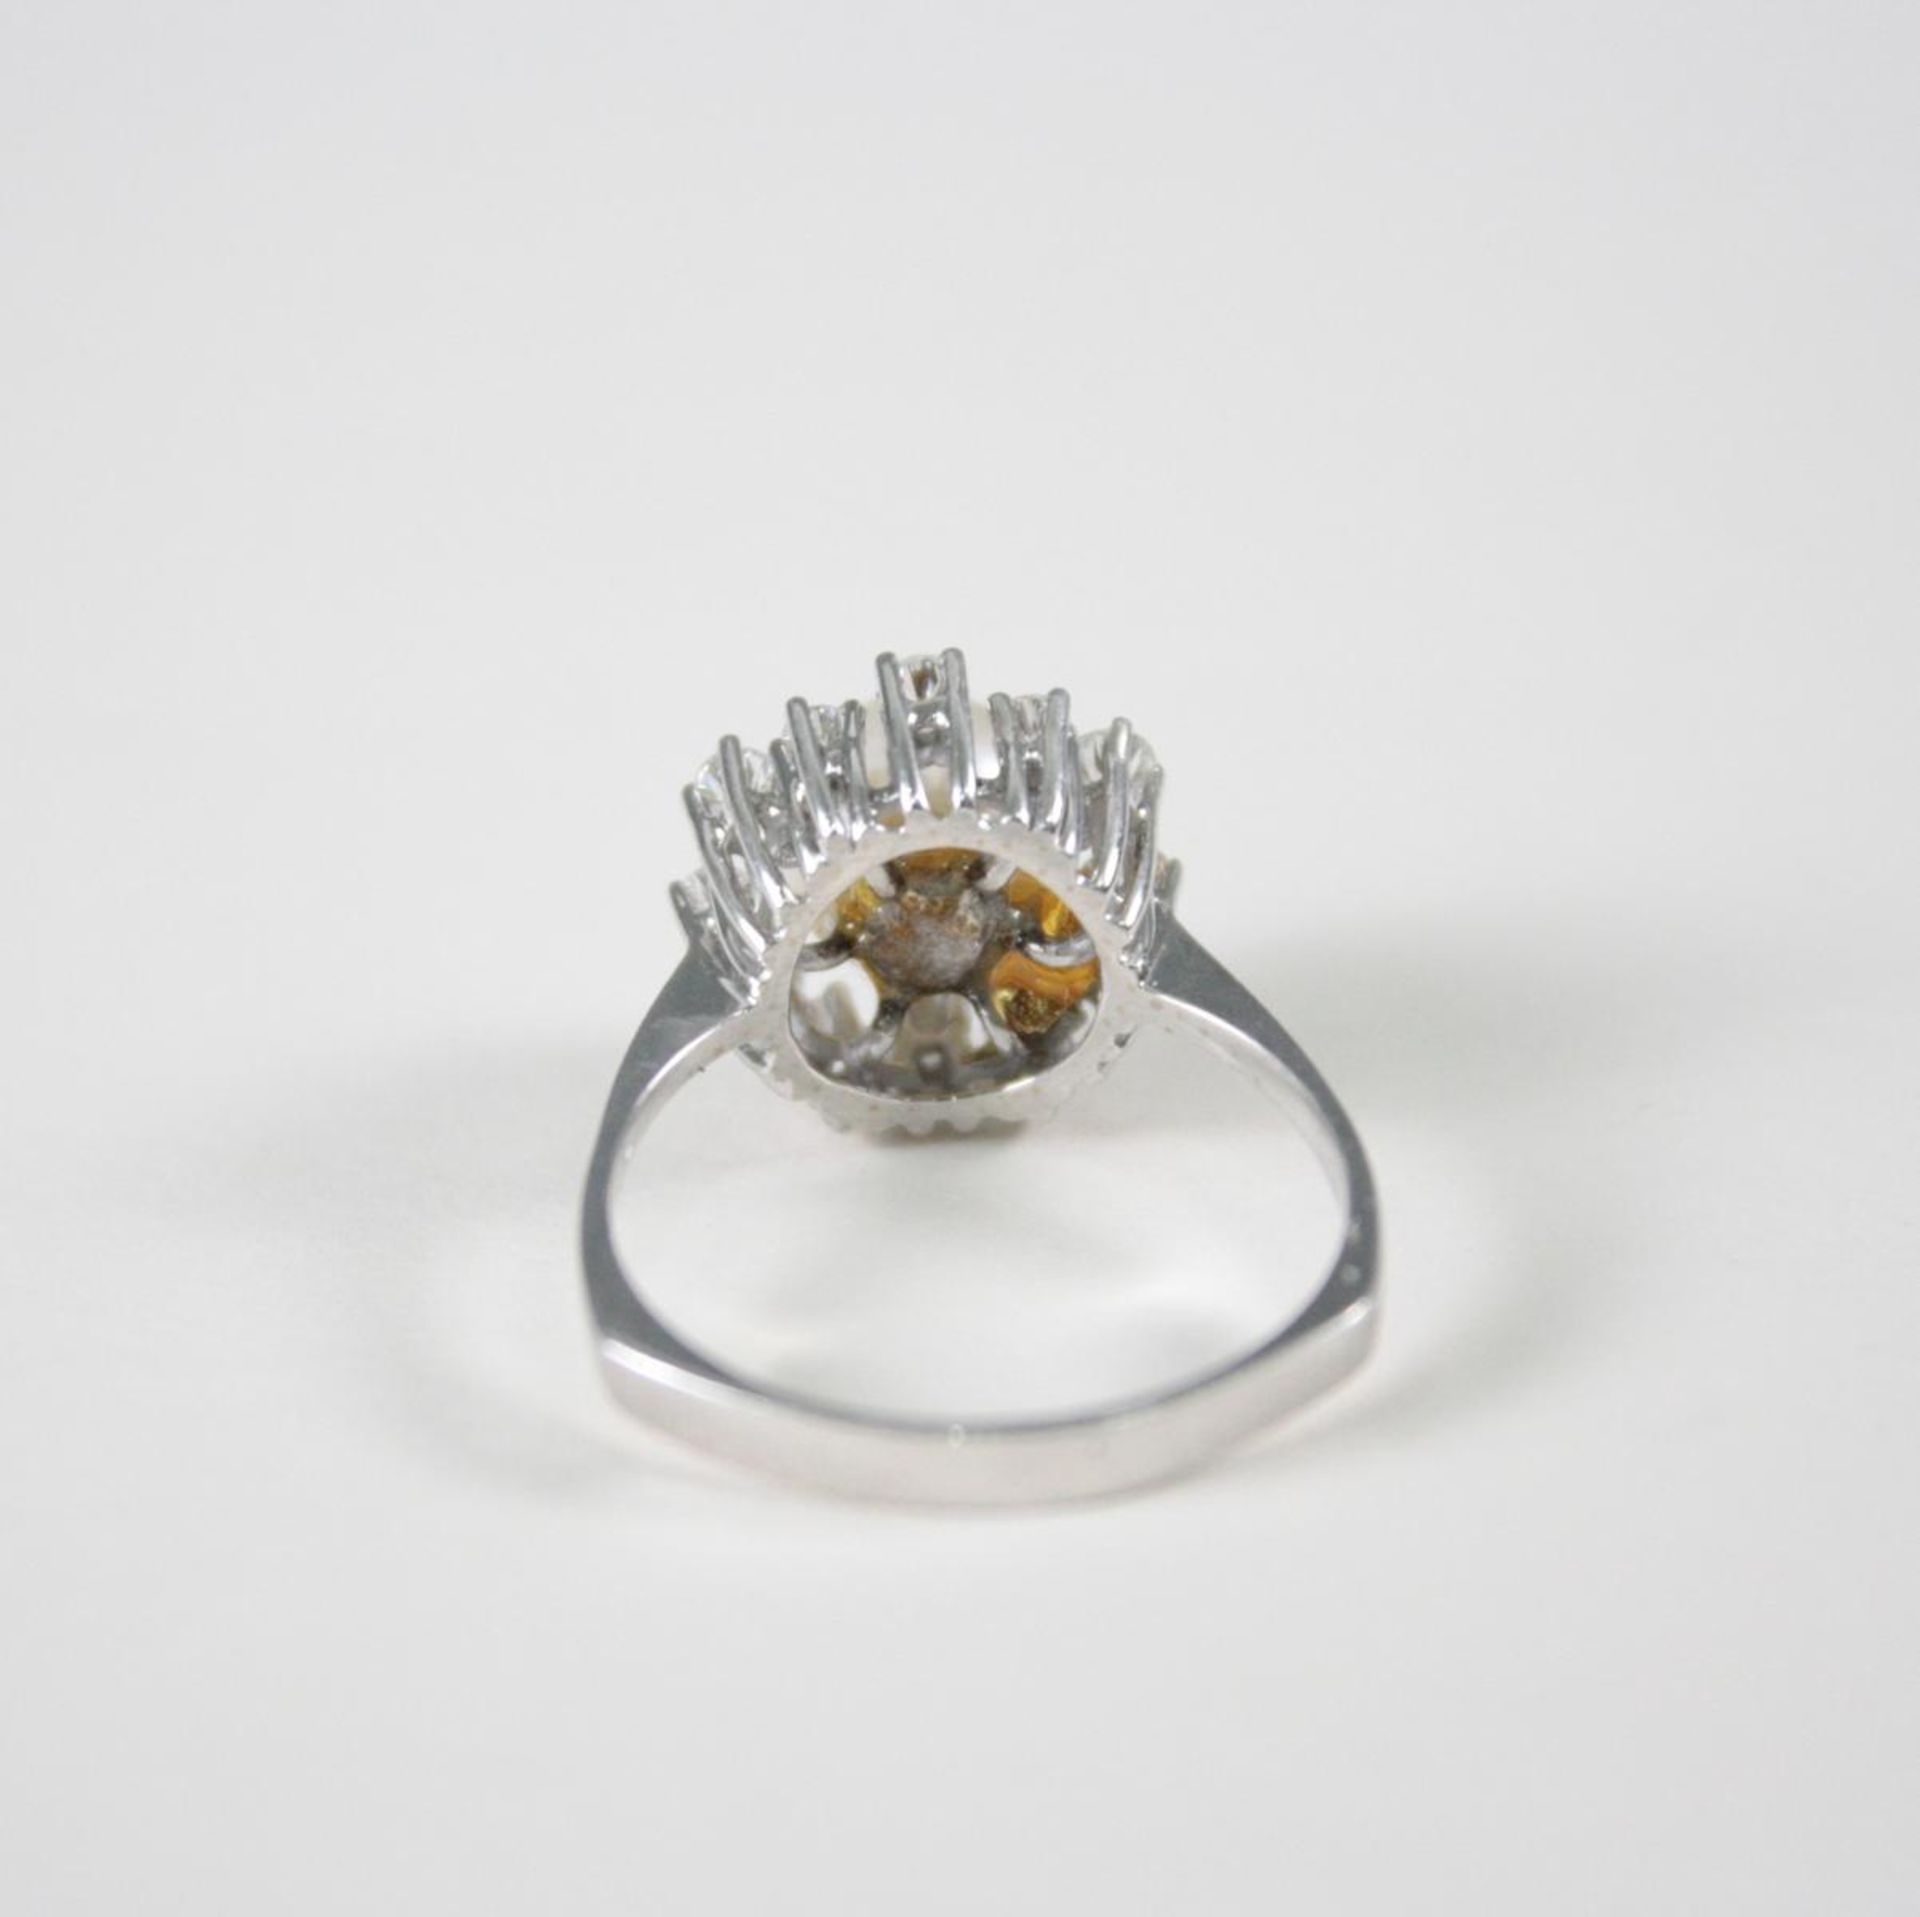 Damenring mit Perle und Diamanten, 14 Karat Weißgold1 Perle Durchmesser 0,79 cm, 12 Diamanten von - Image 3 of 3